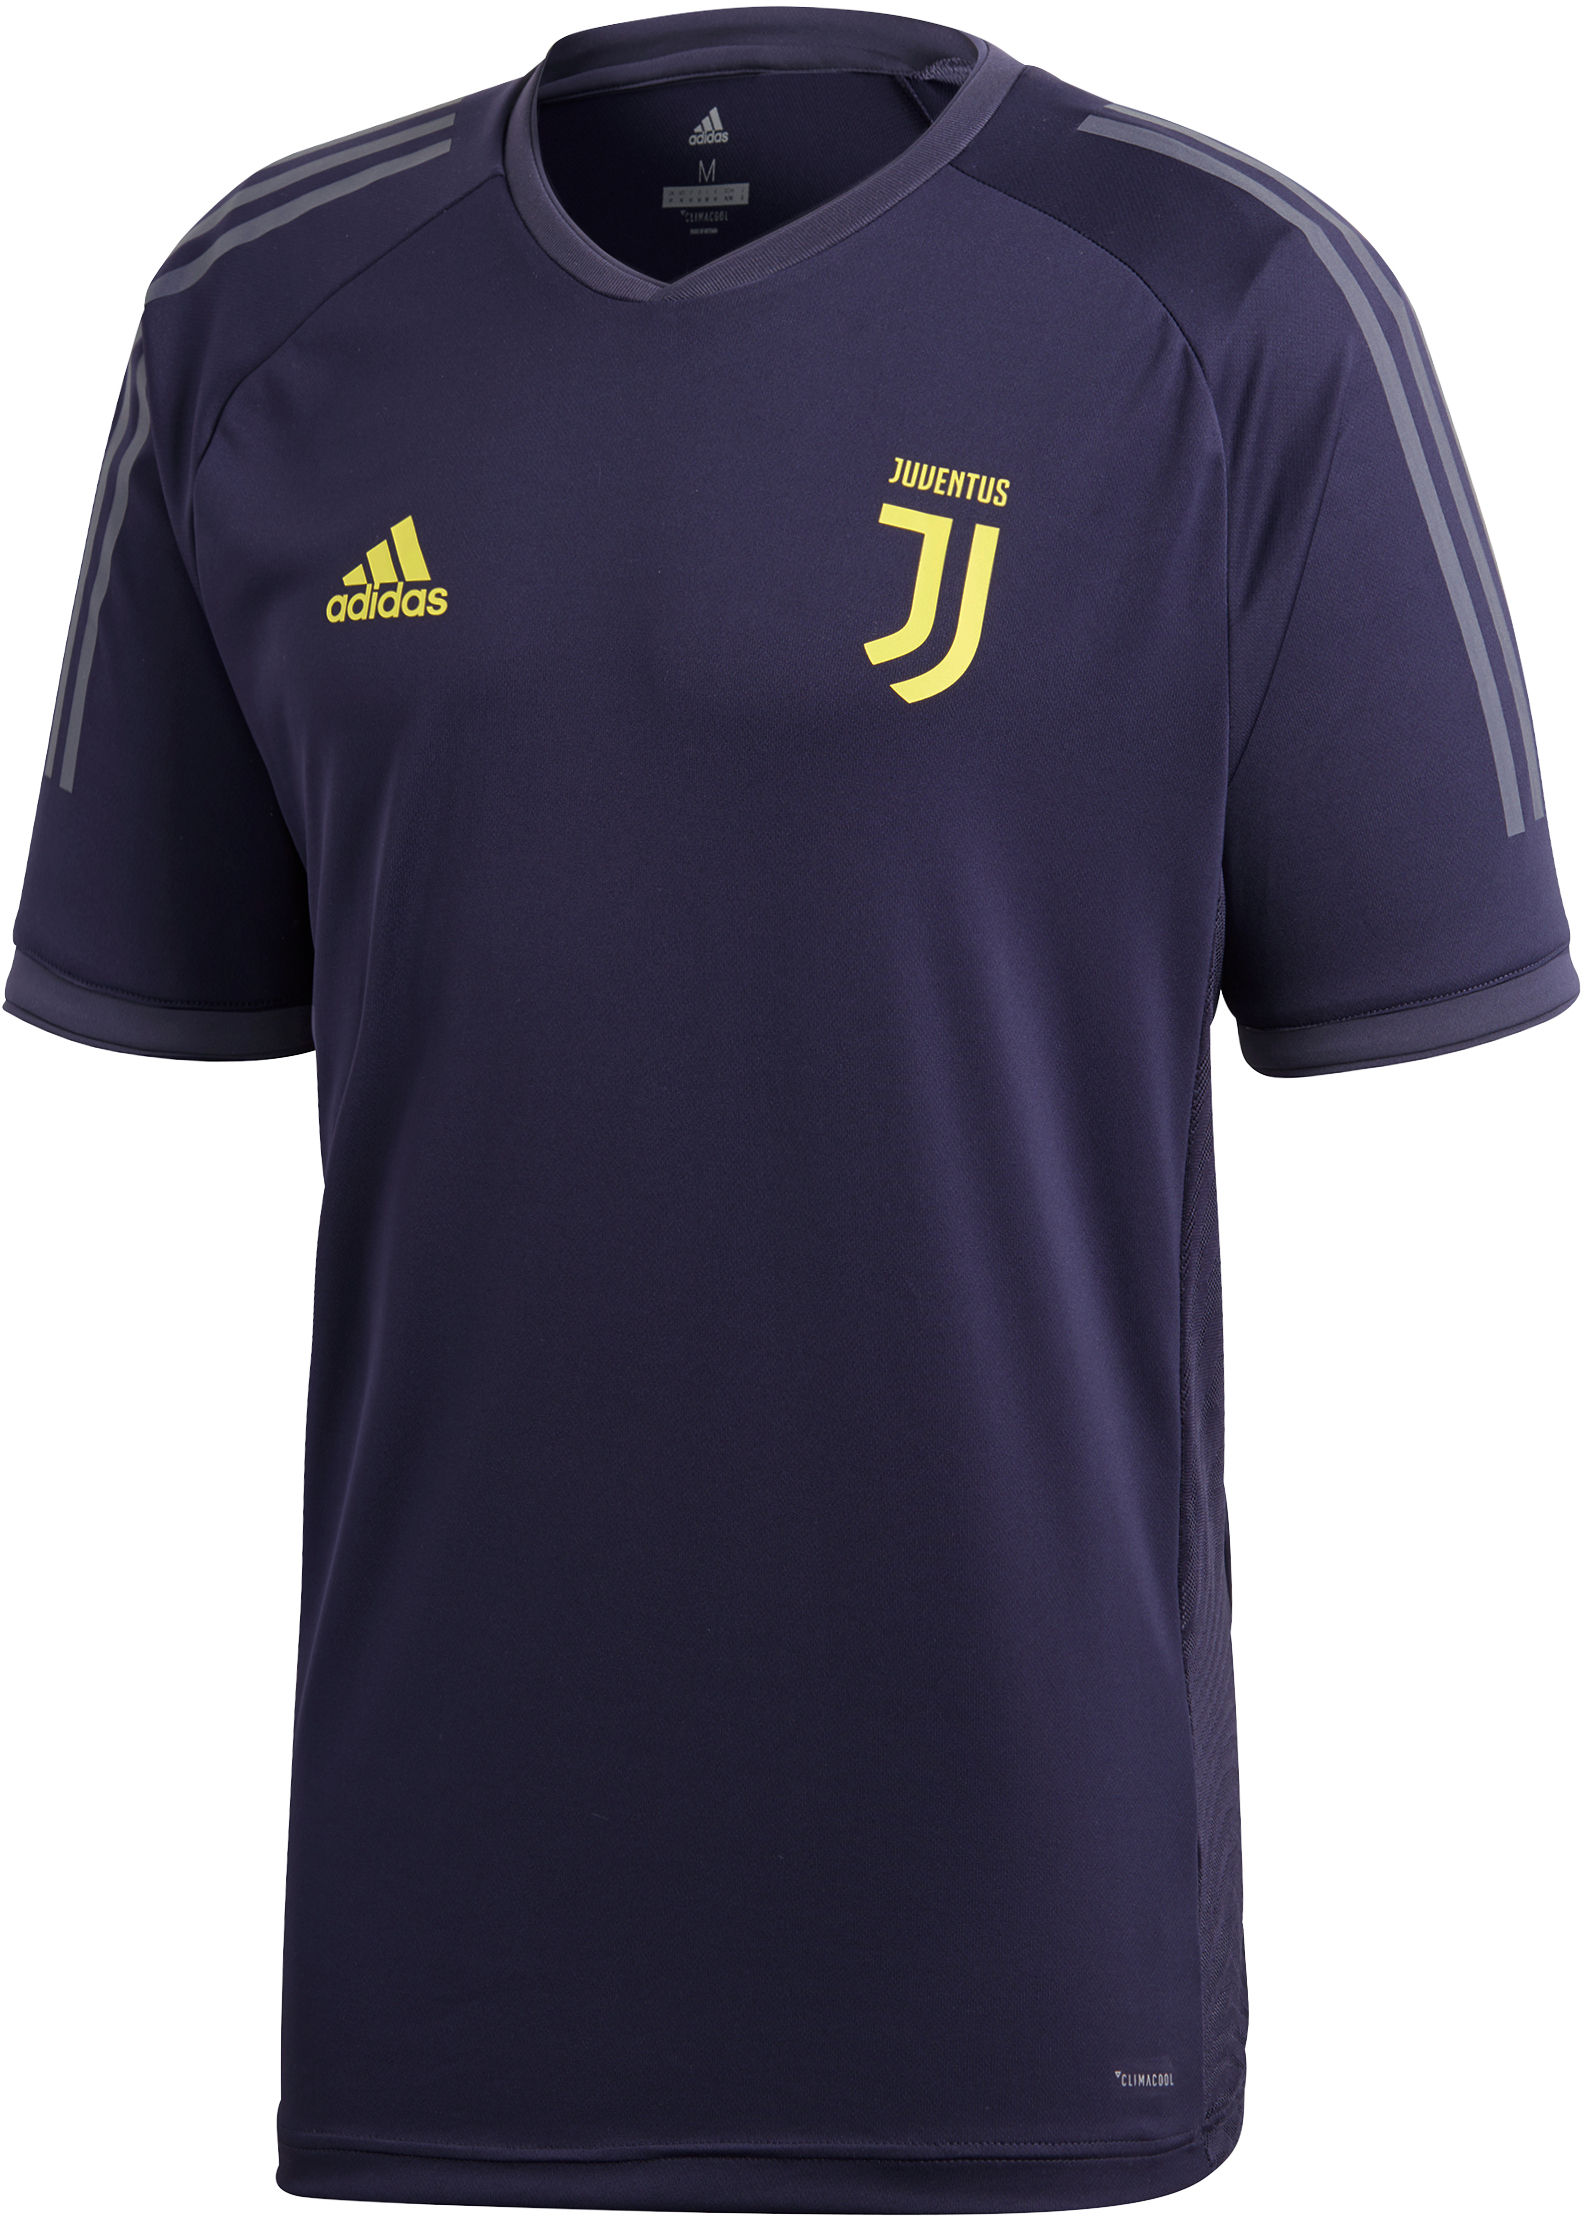 adidas Juventus Ultimate Training Jersey